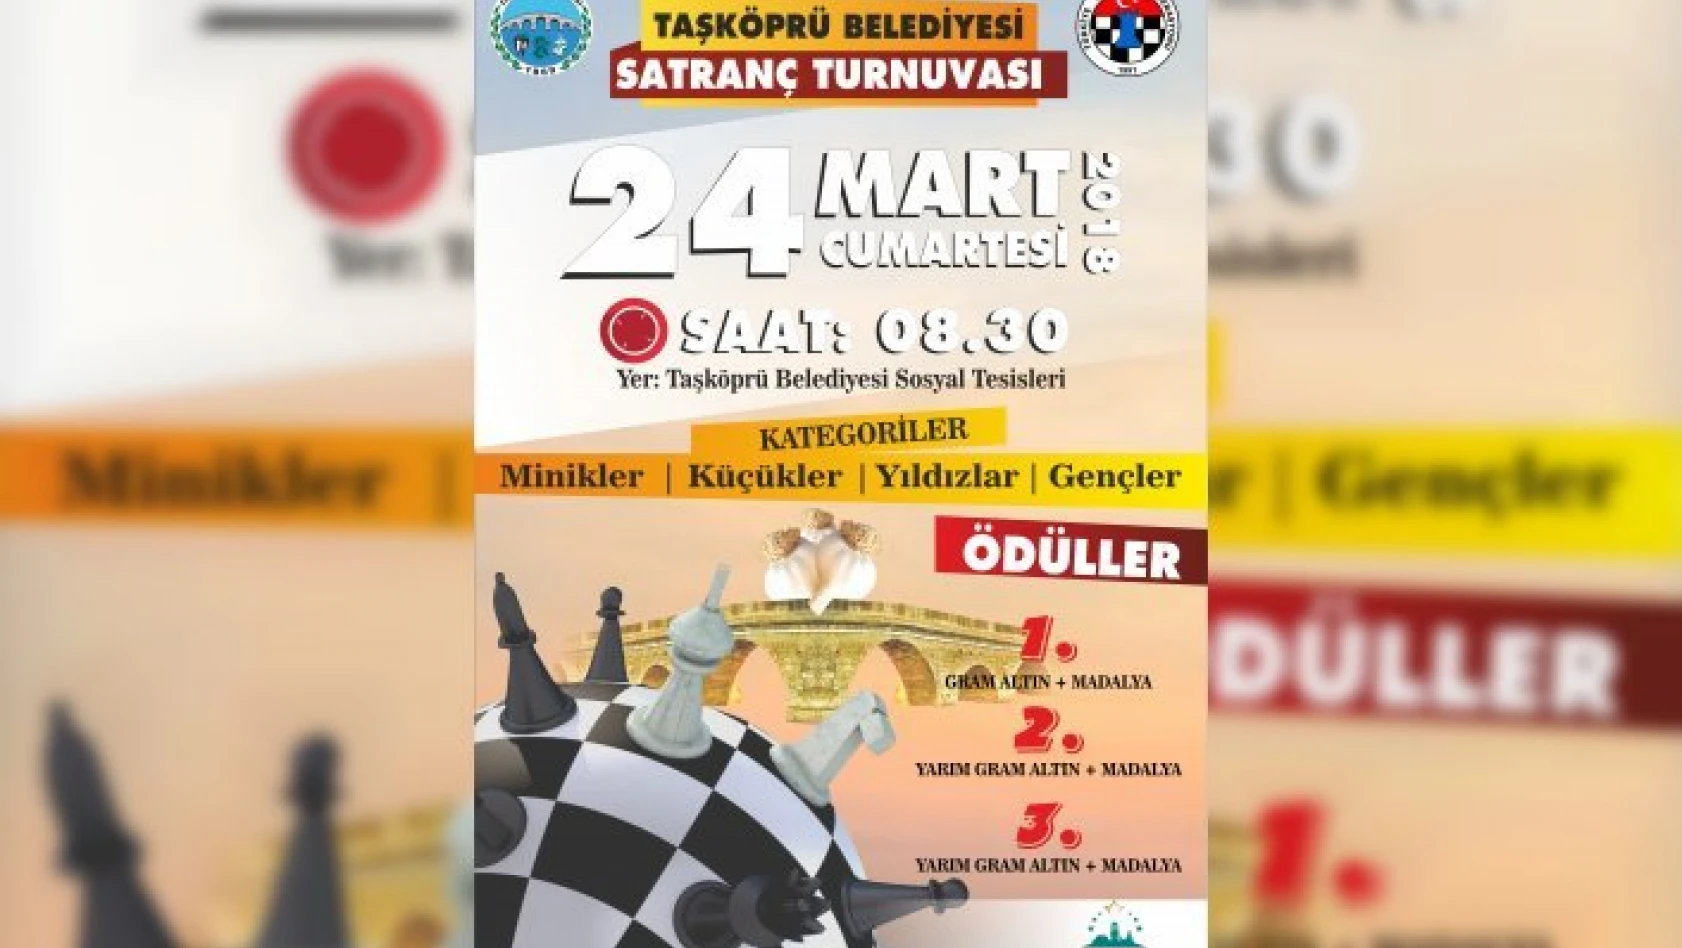 Taşköprü Belediyesi Satranç Turnuvası düzenliyor